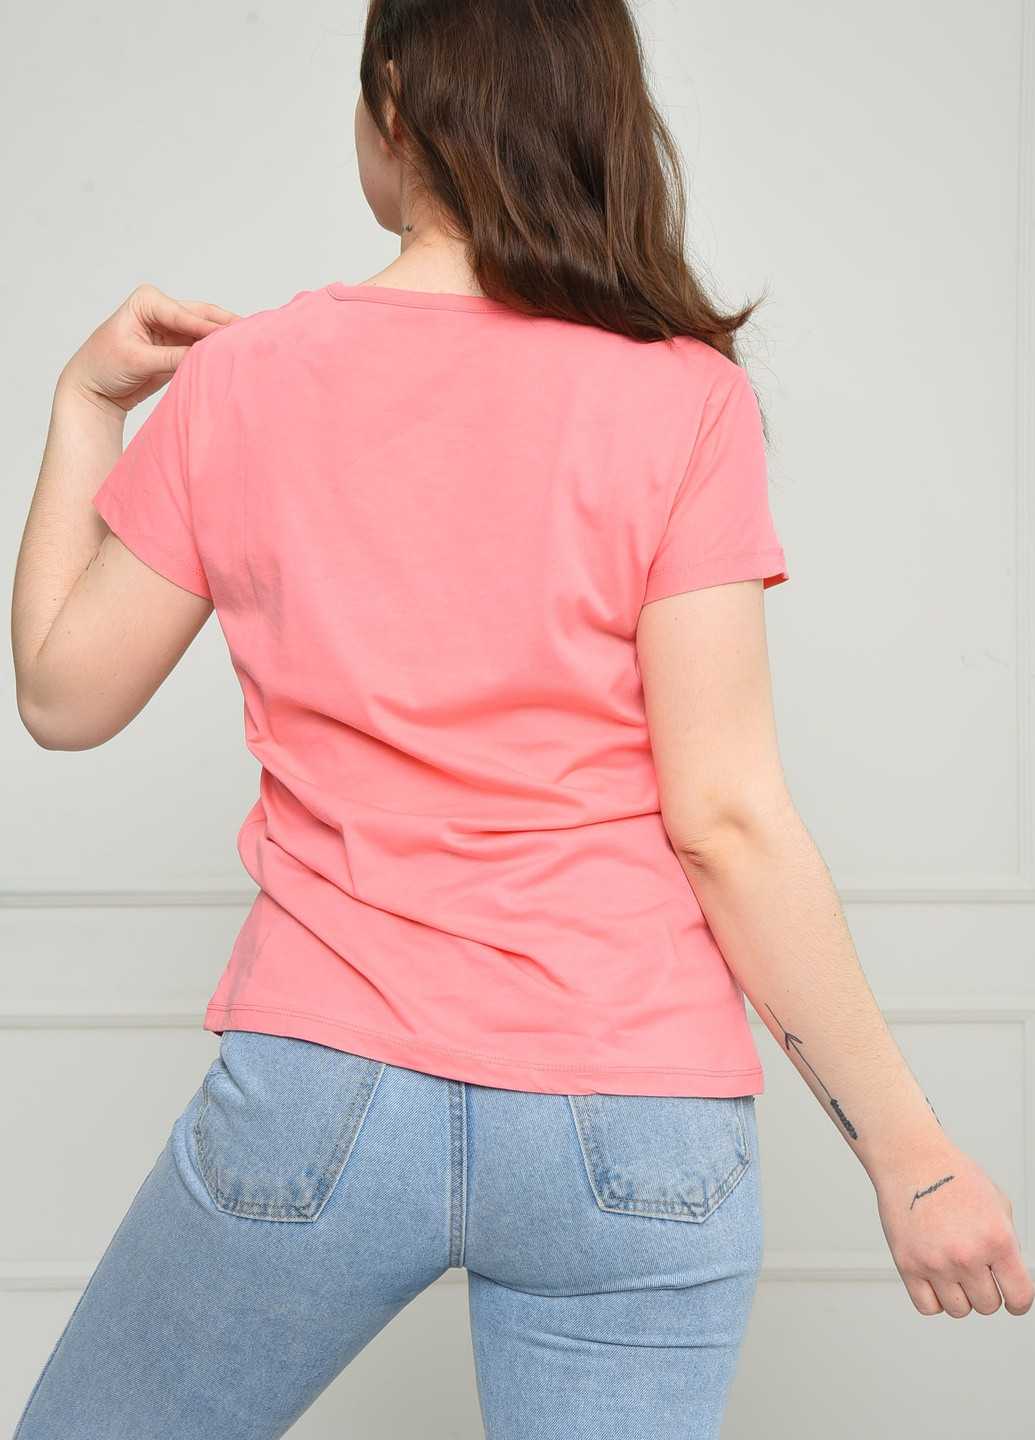 Розовая летняя футболка женская розового цвета Let's Shop